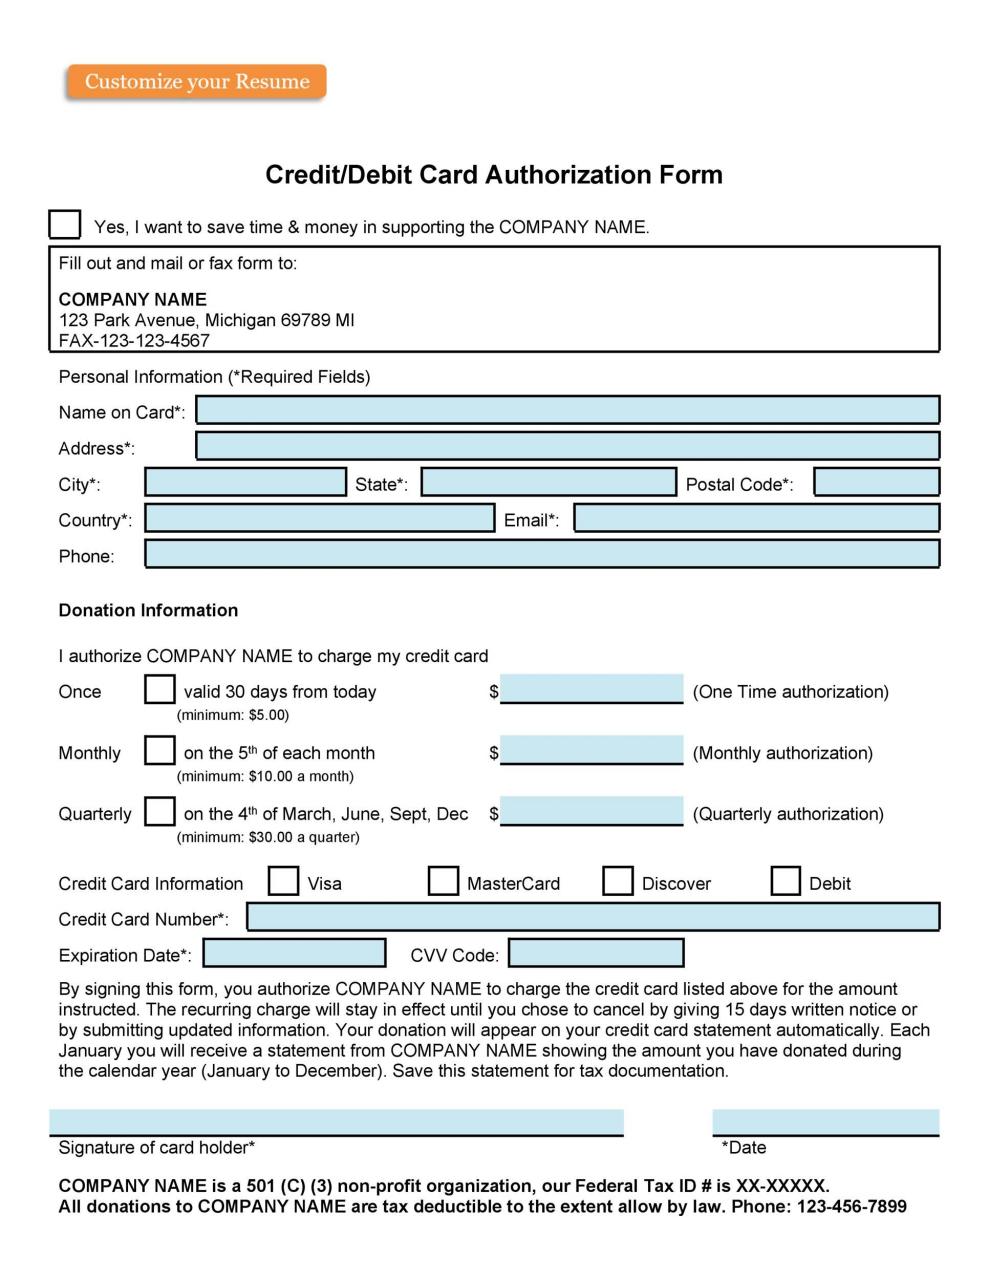 Plantilla de formulario de autorización de tarjeta de crédito gratis 30